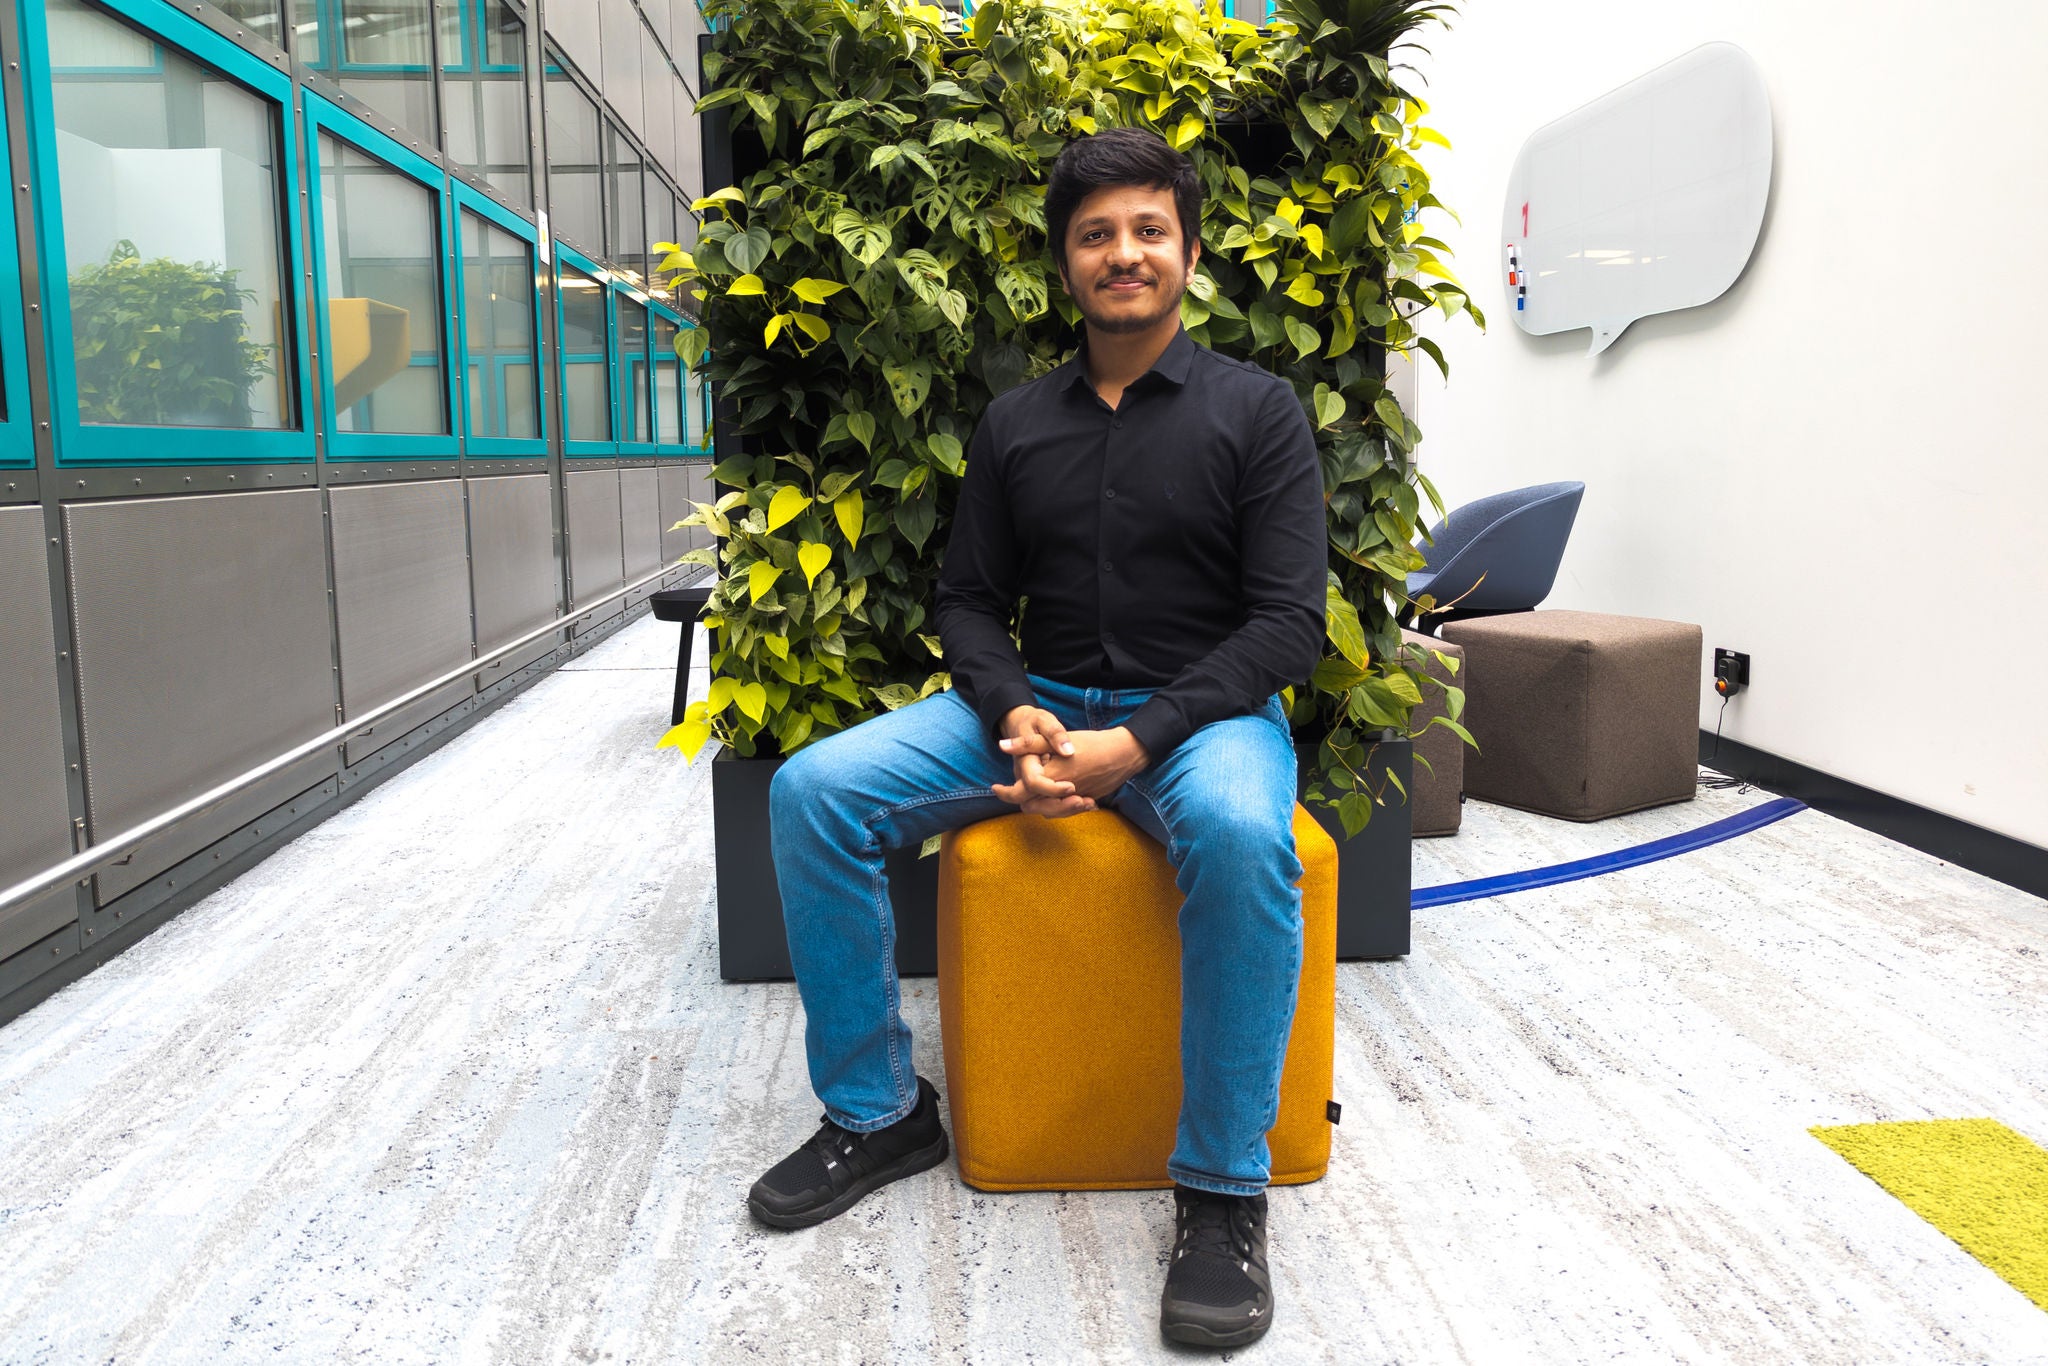 Manickaraj Subramanian Sivanarutchelvi, Senior-Reifenentwickler und Projektleiter WinterContact 8 S